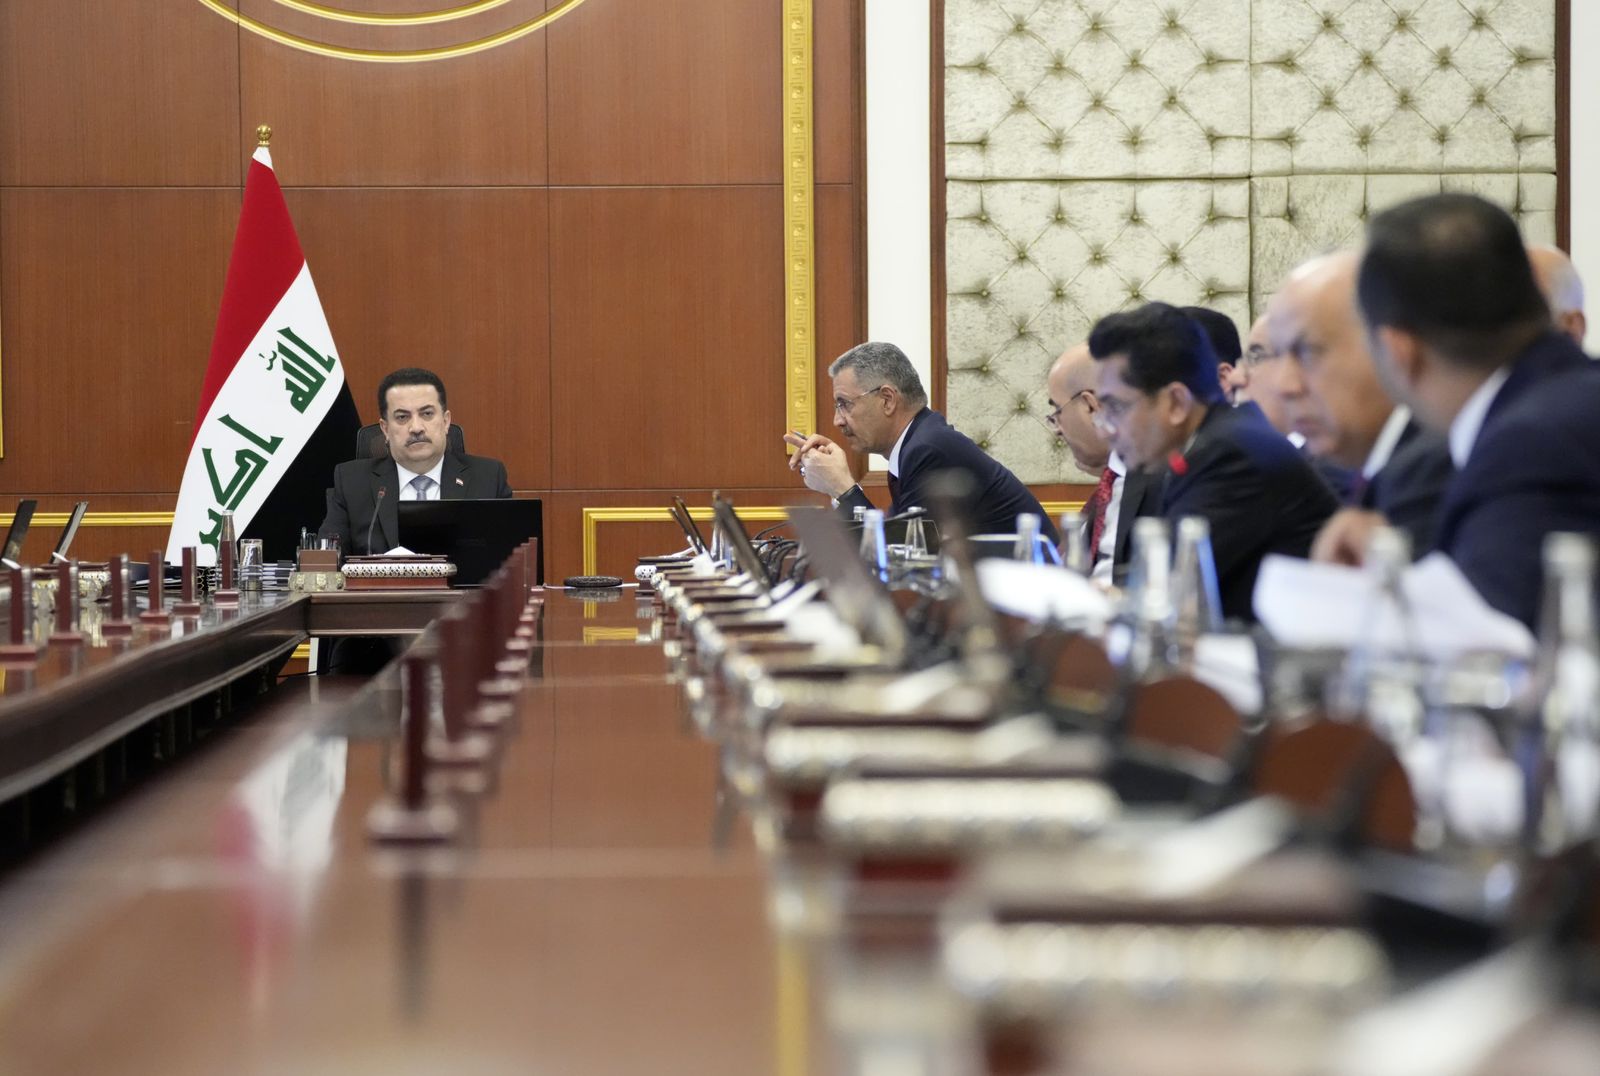 مجلس الوزراء العراقي يصدر قرارات "اقتصادية" ويلزم المحافظات بوضع خطة خمسية للإعمار